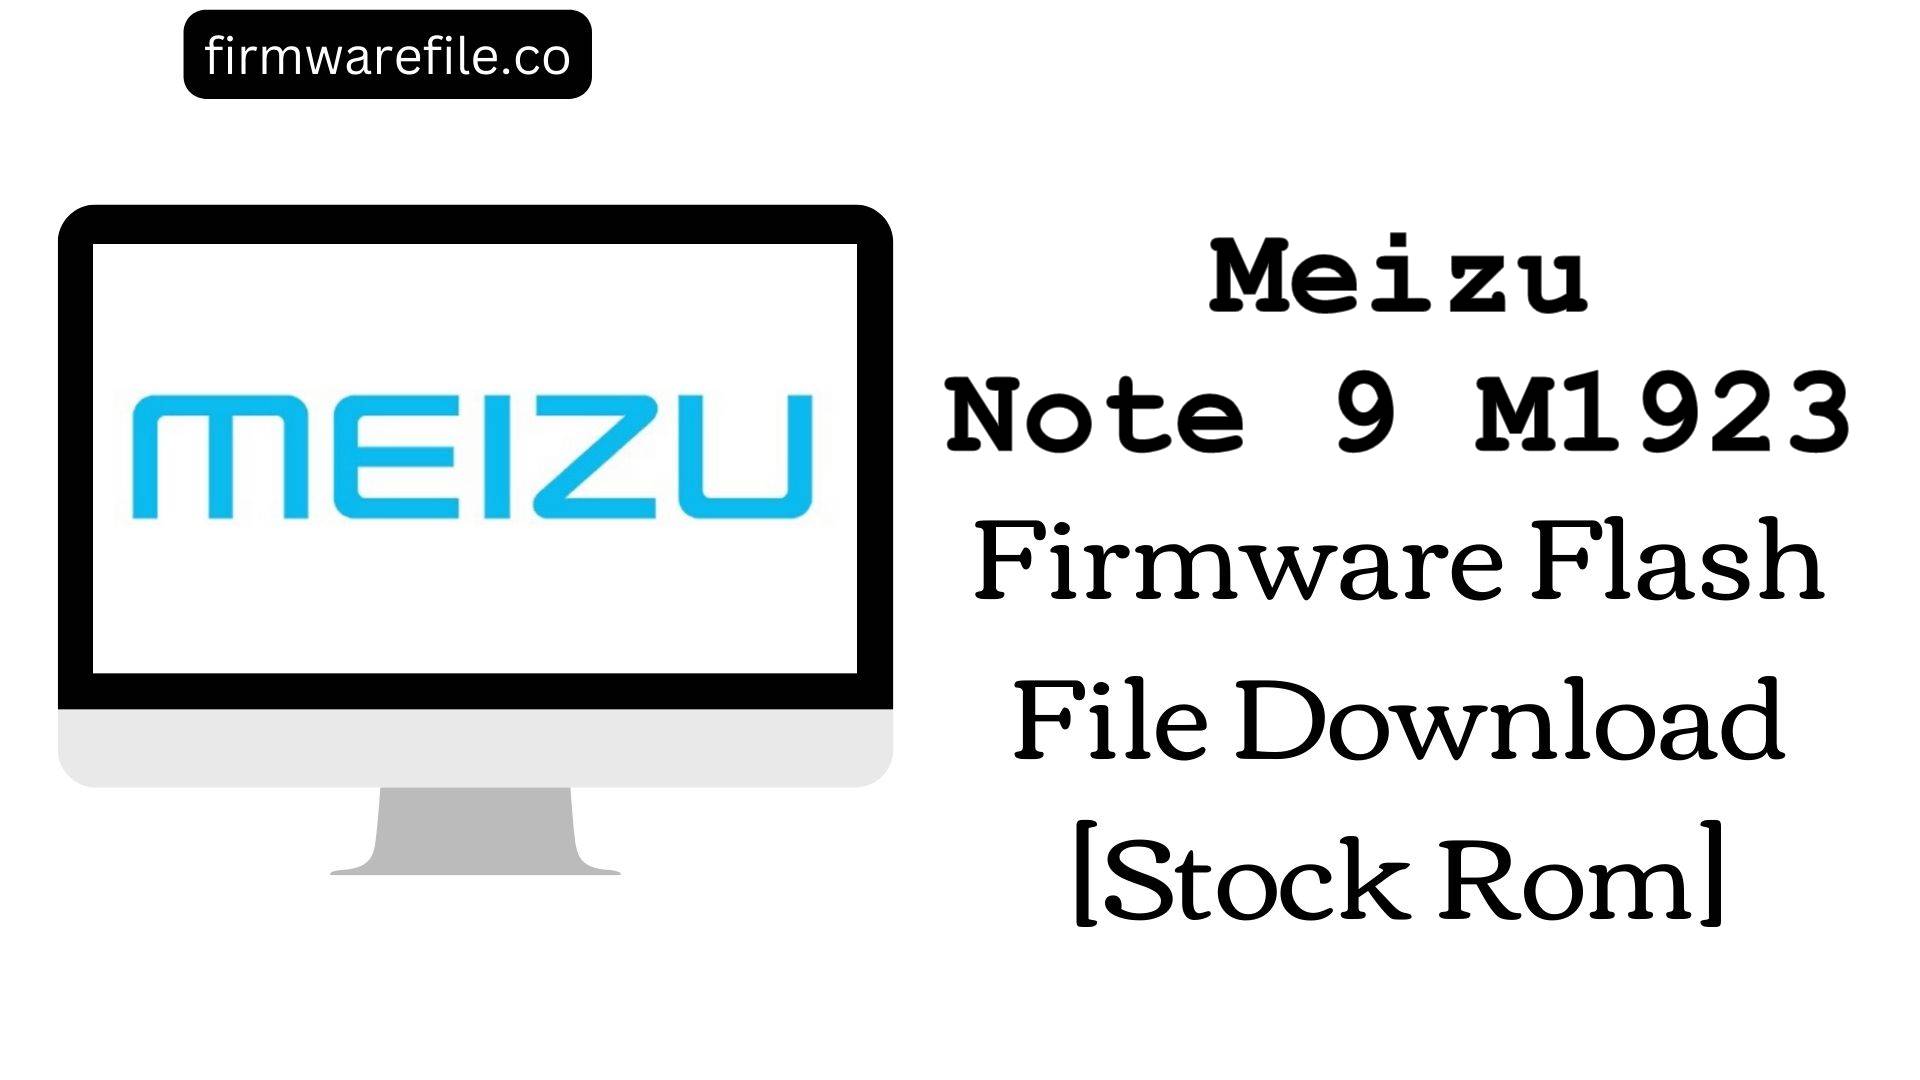 Meizu Note 9 M1923